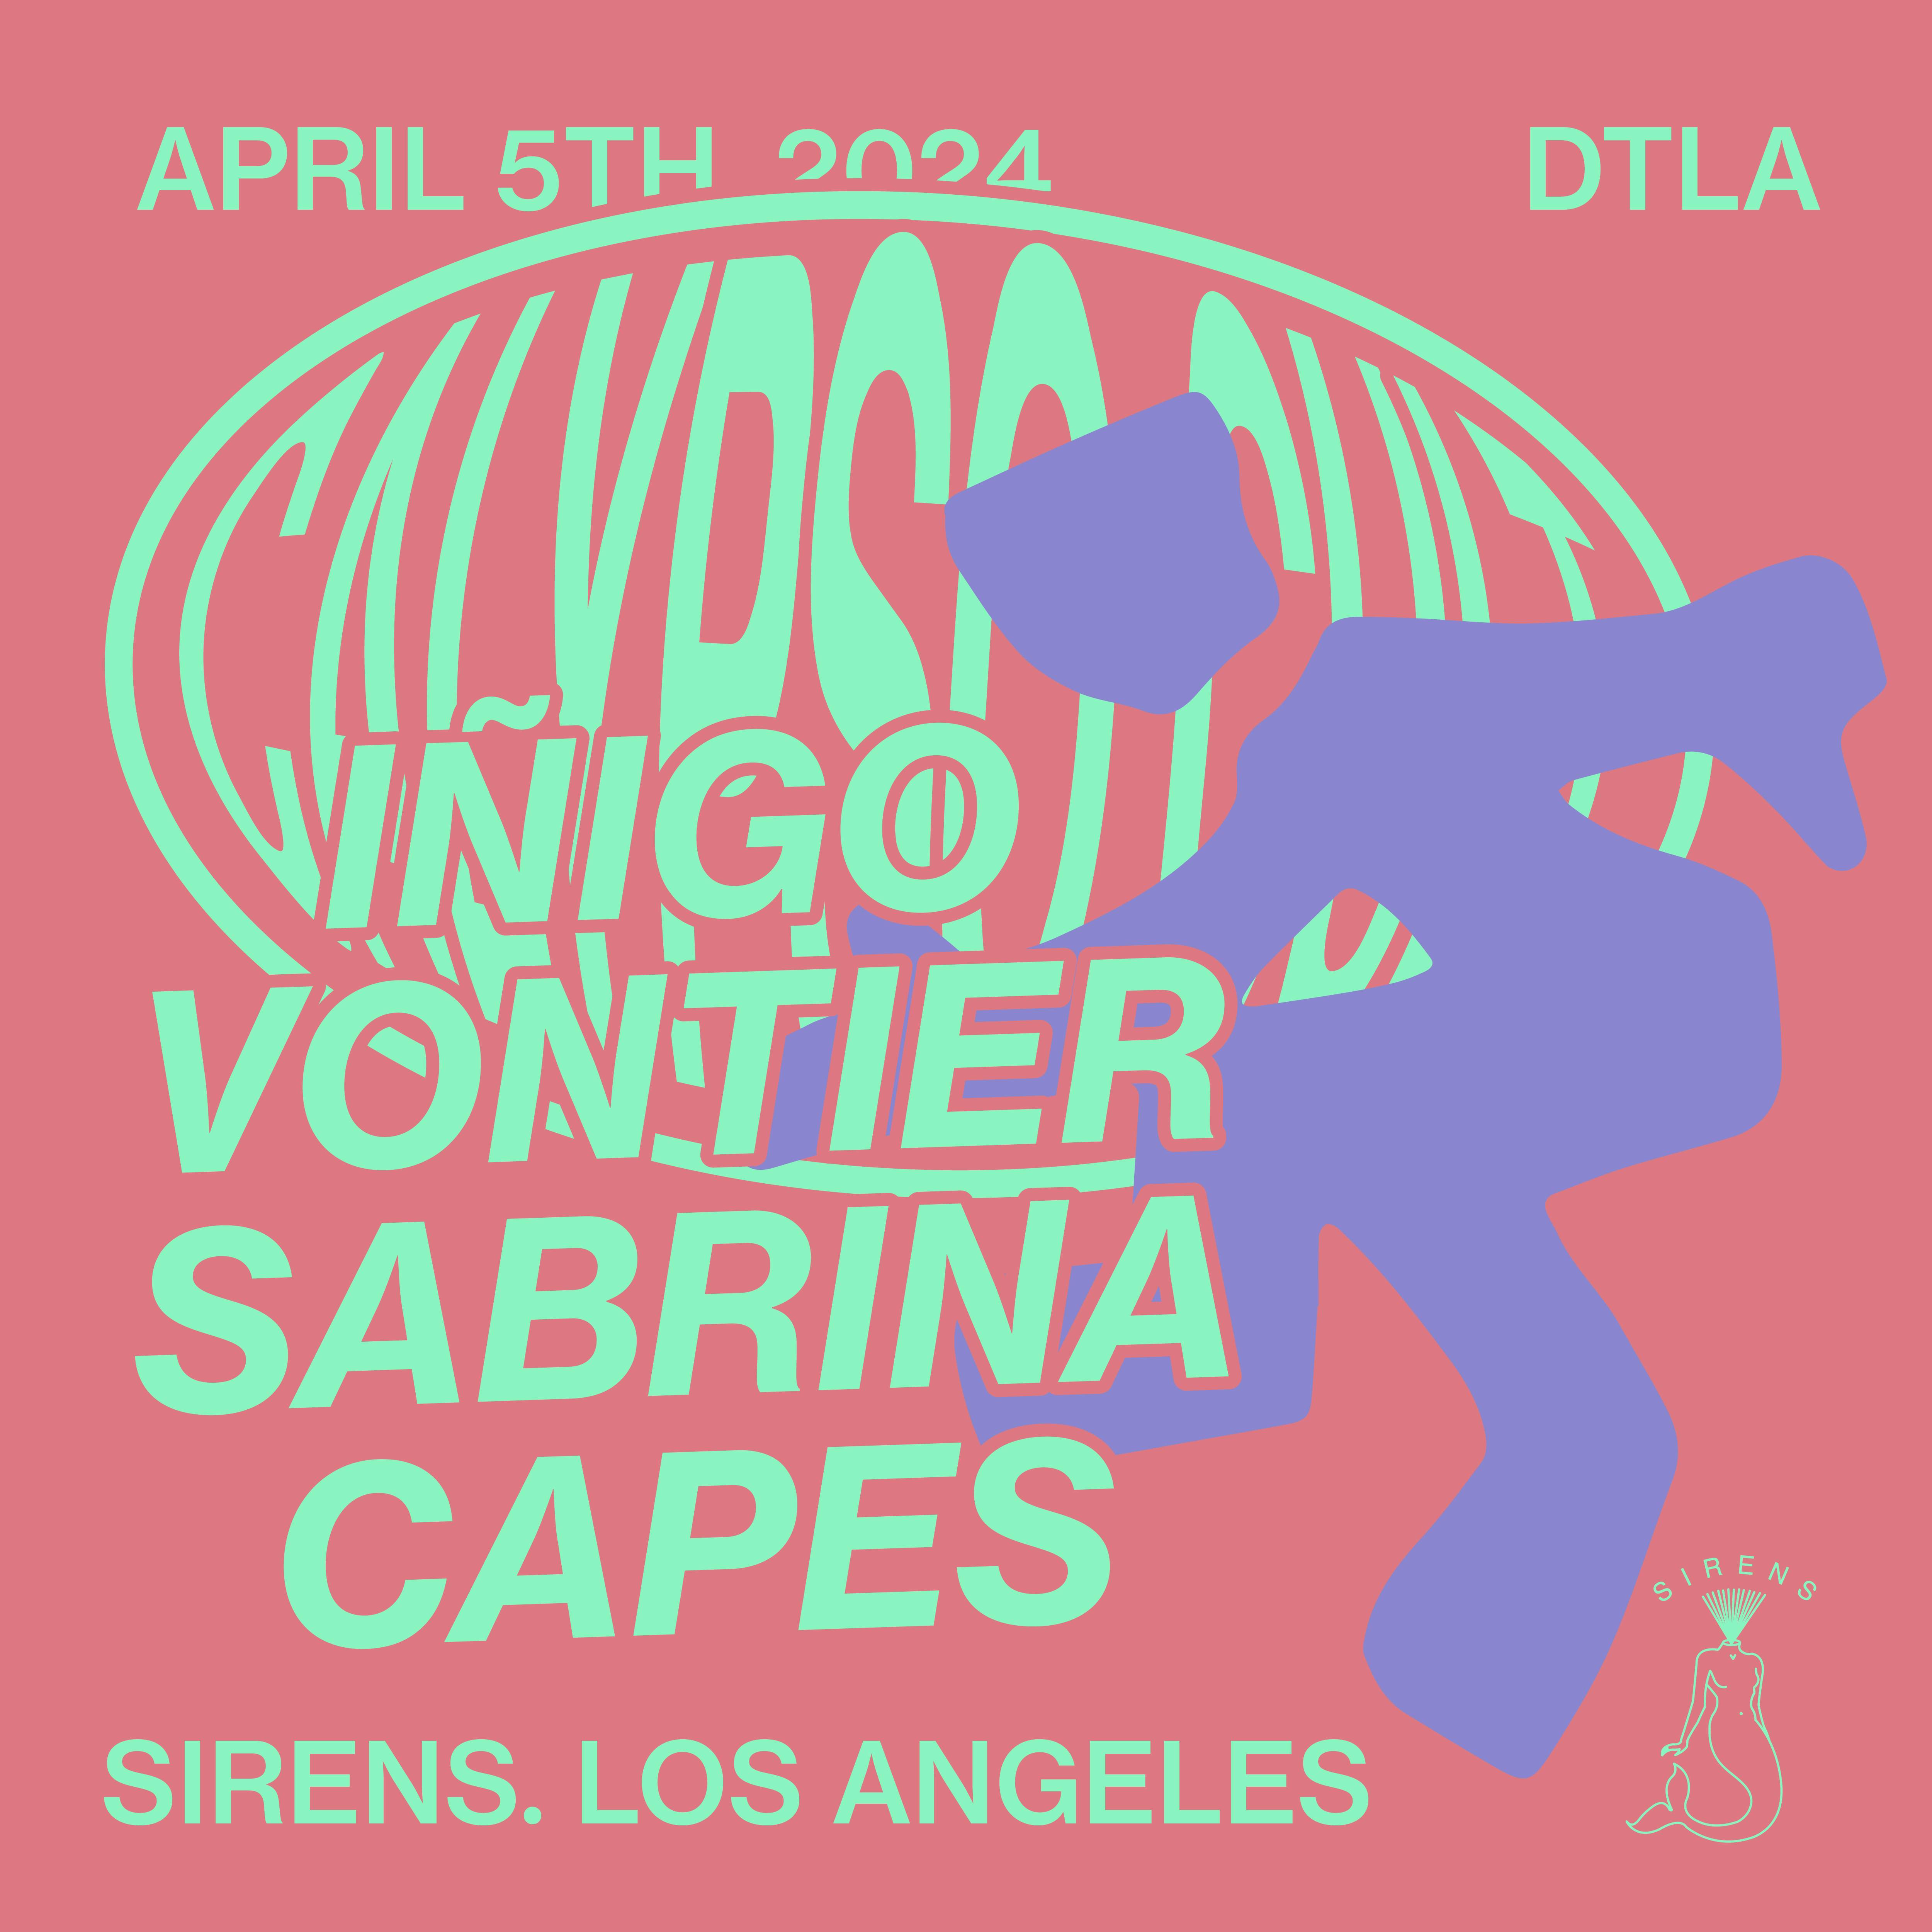 CALYPSO CVLT Los Angeles: Iñigo Vontier, Sabrina, Capes - フライヤー表